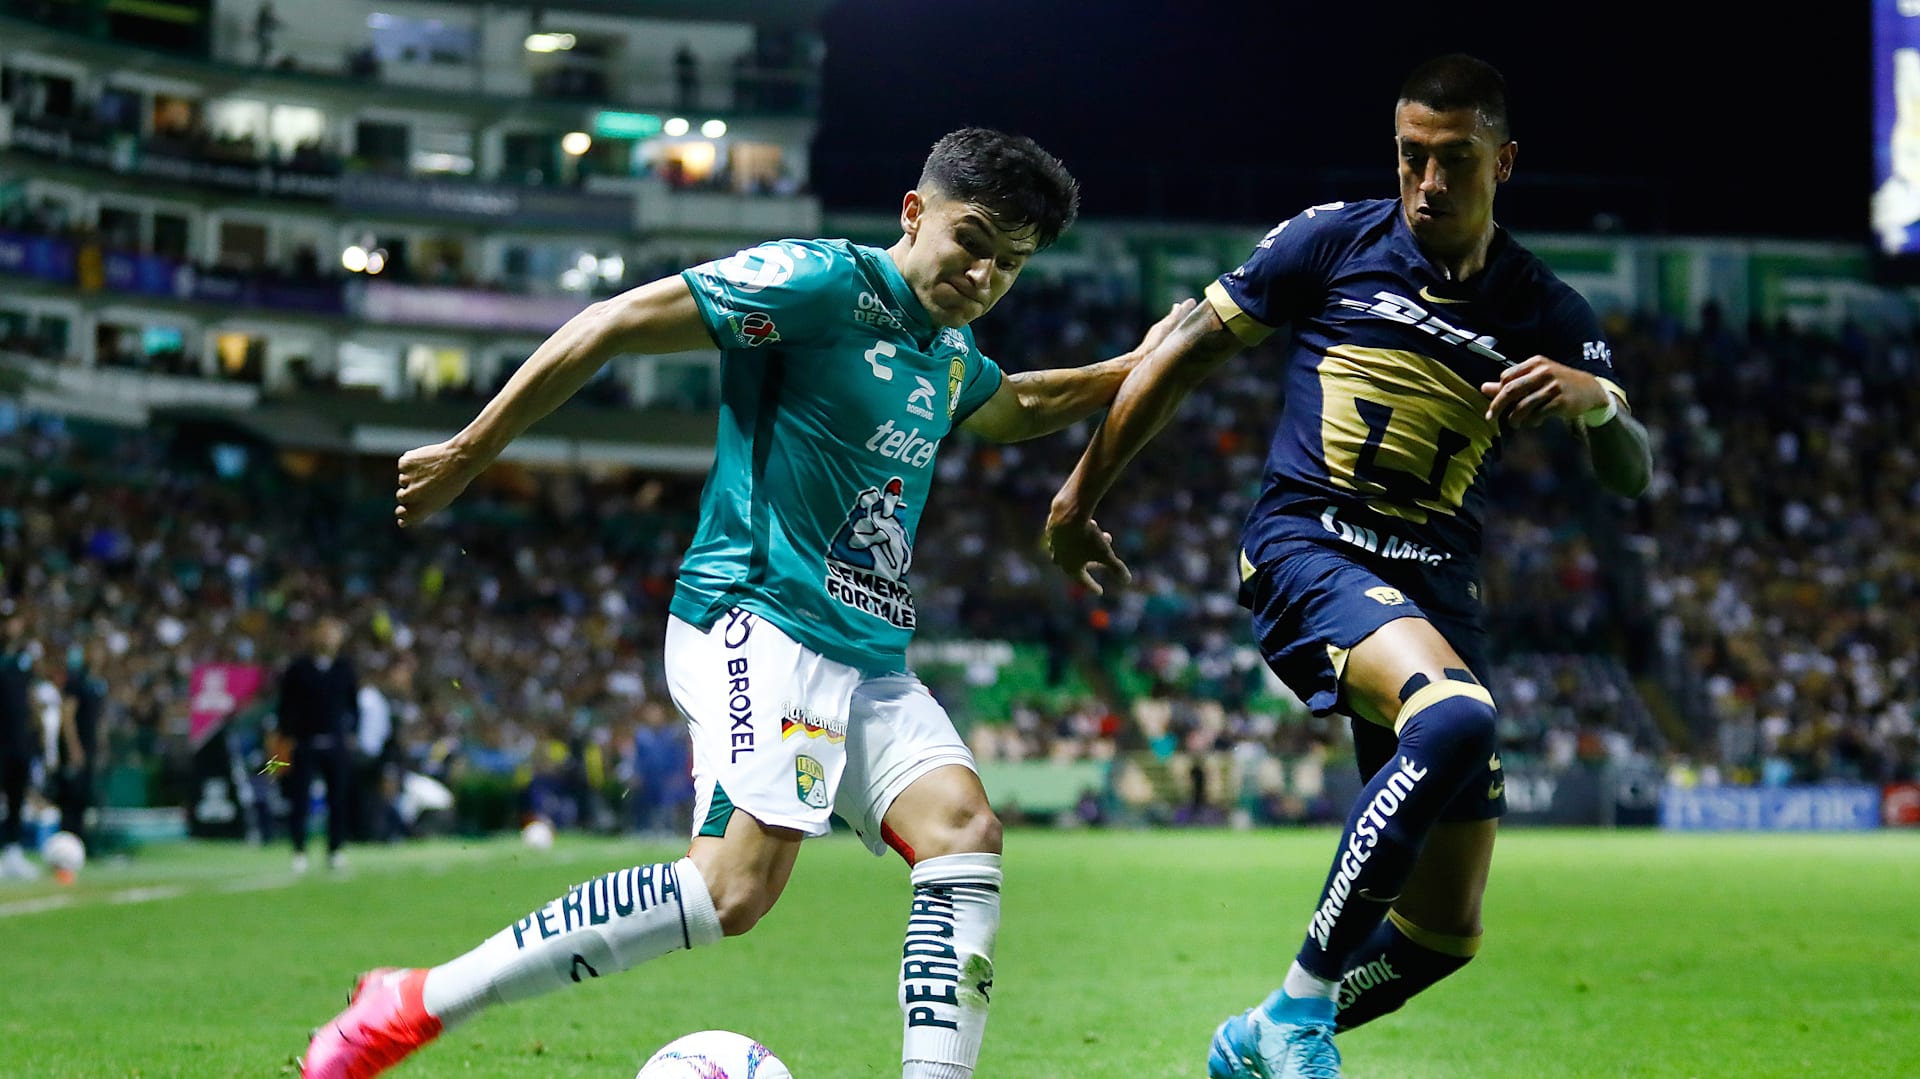 Liga MX: ¿Cómo quedan los títulos ganados en el futbol mexicano?